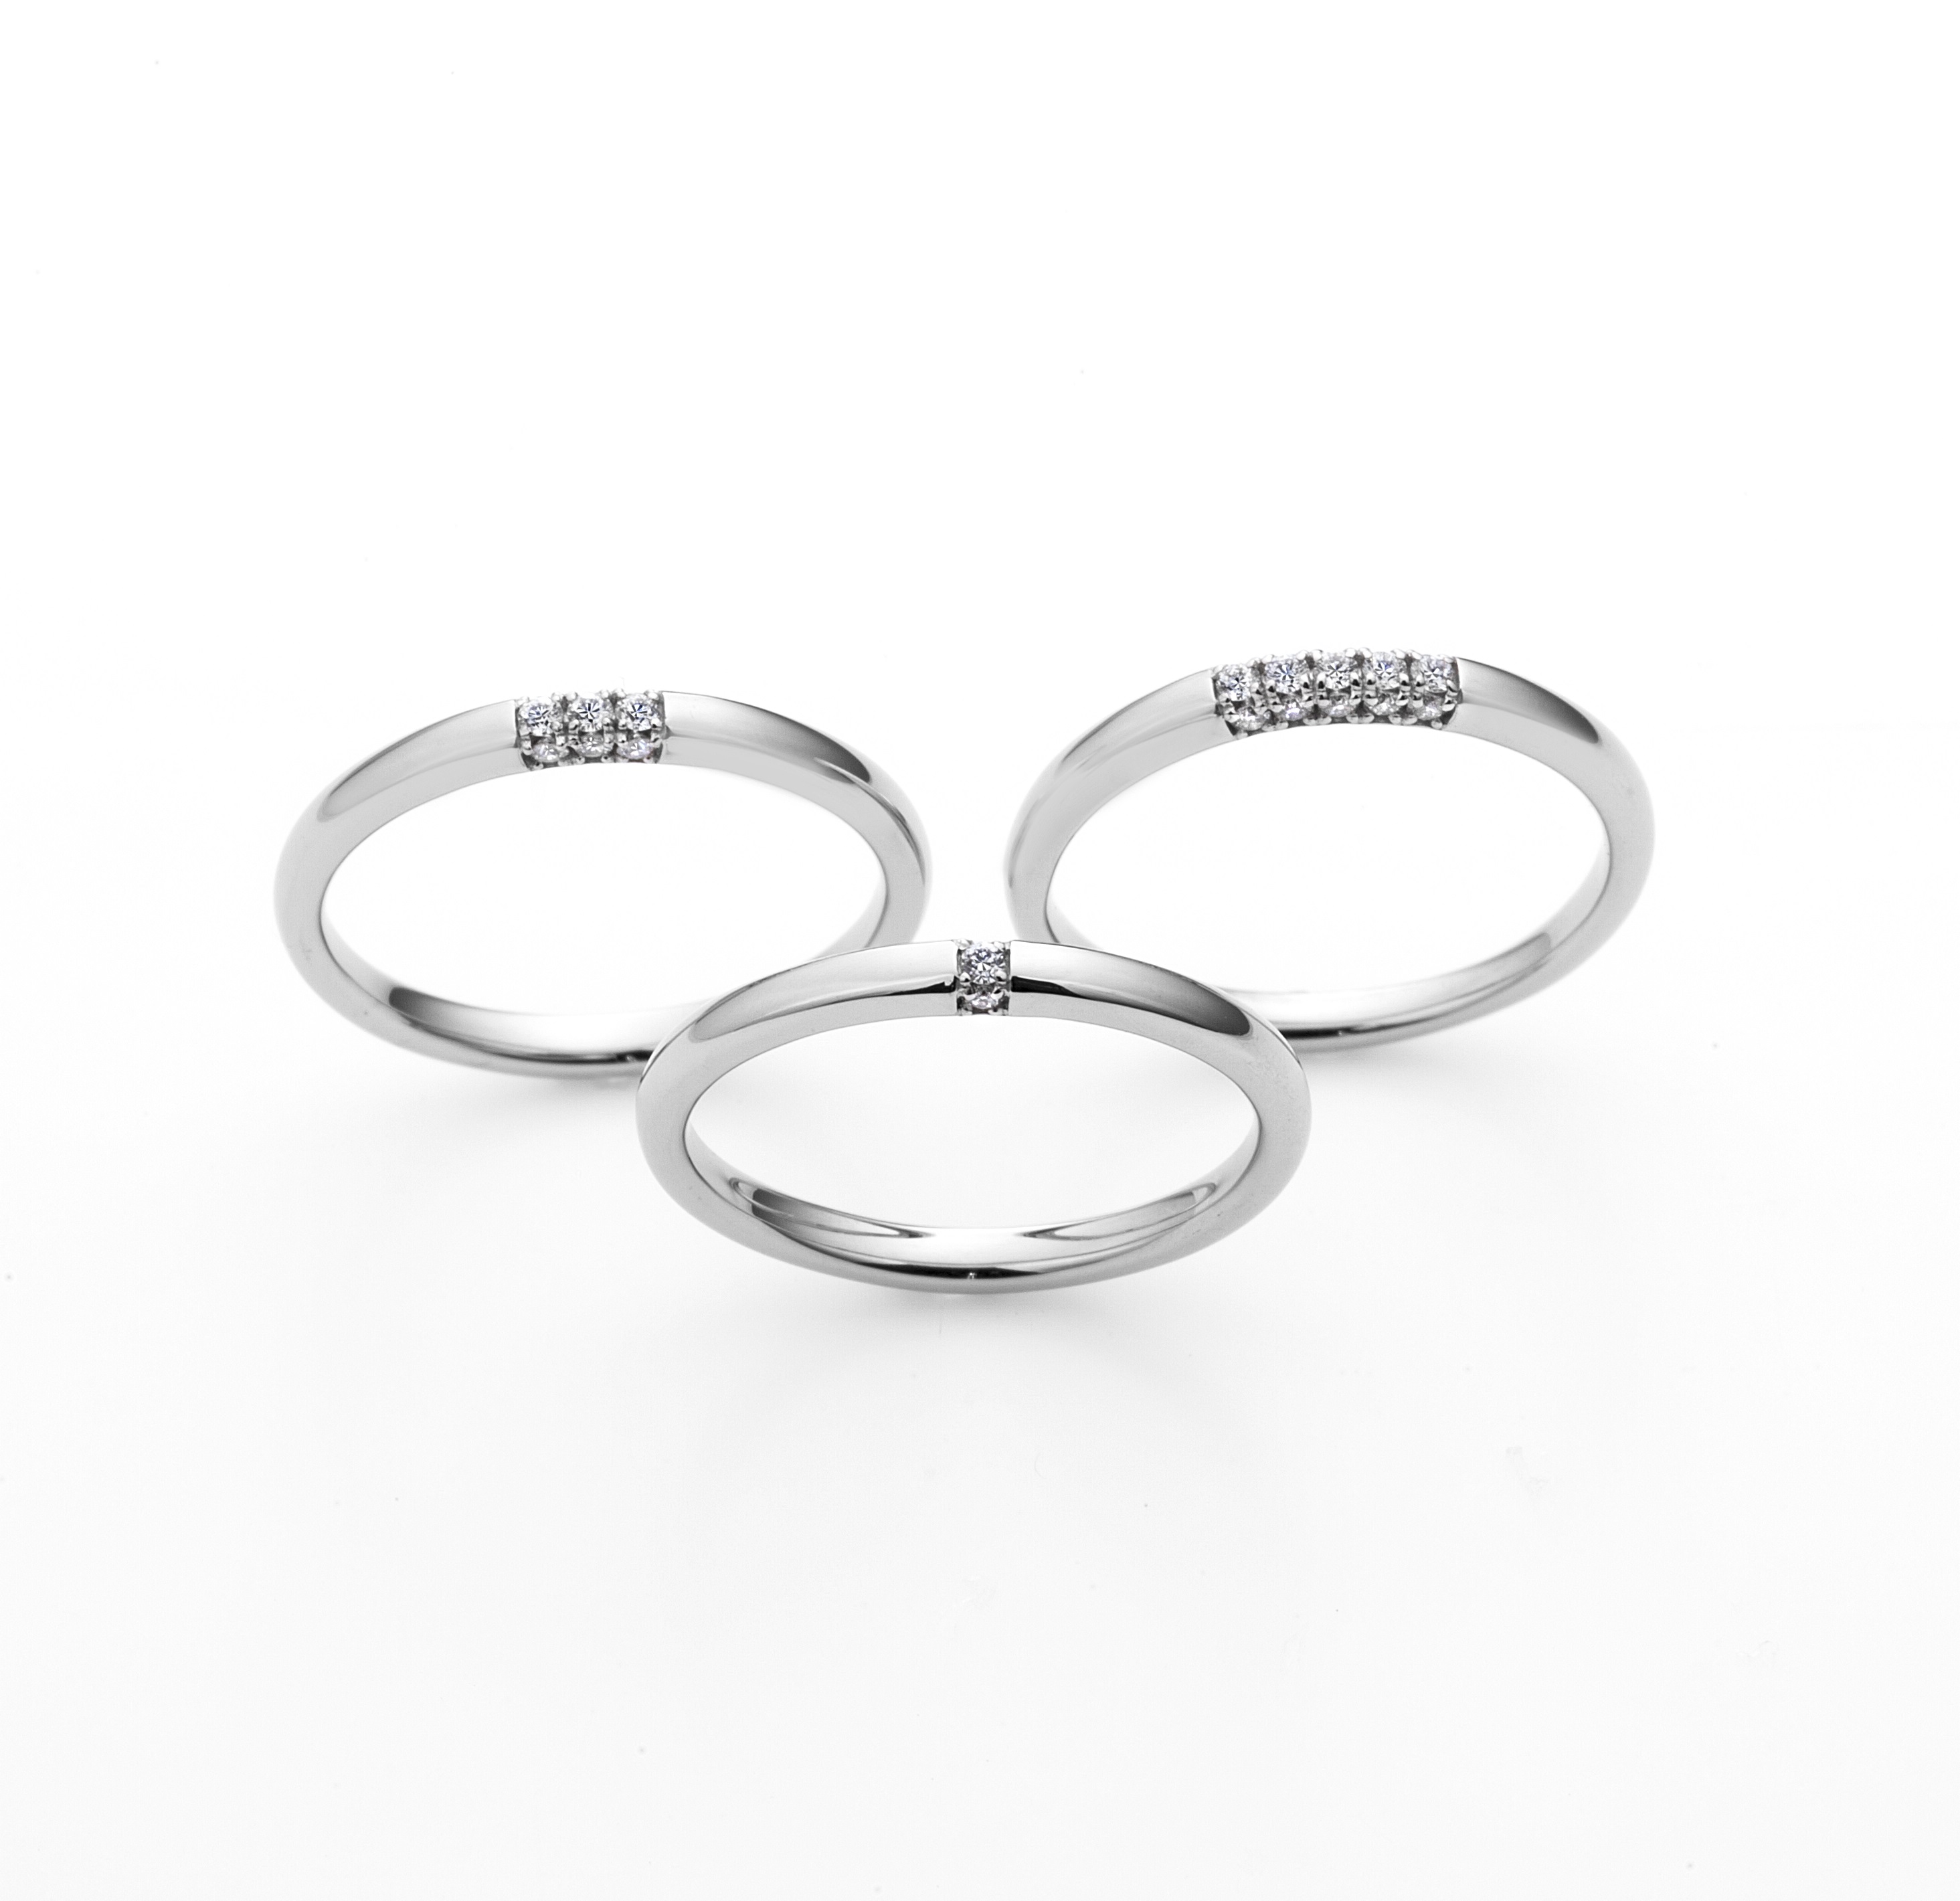 ラザールダイヤモンド結婚指輪「フェアリーリング」